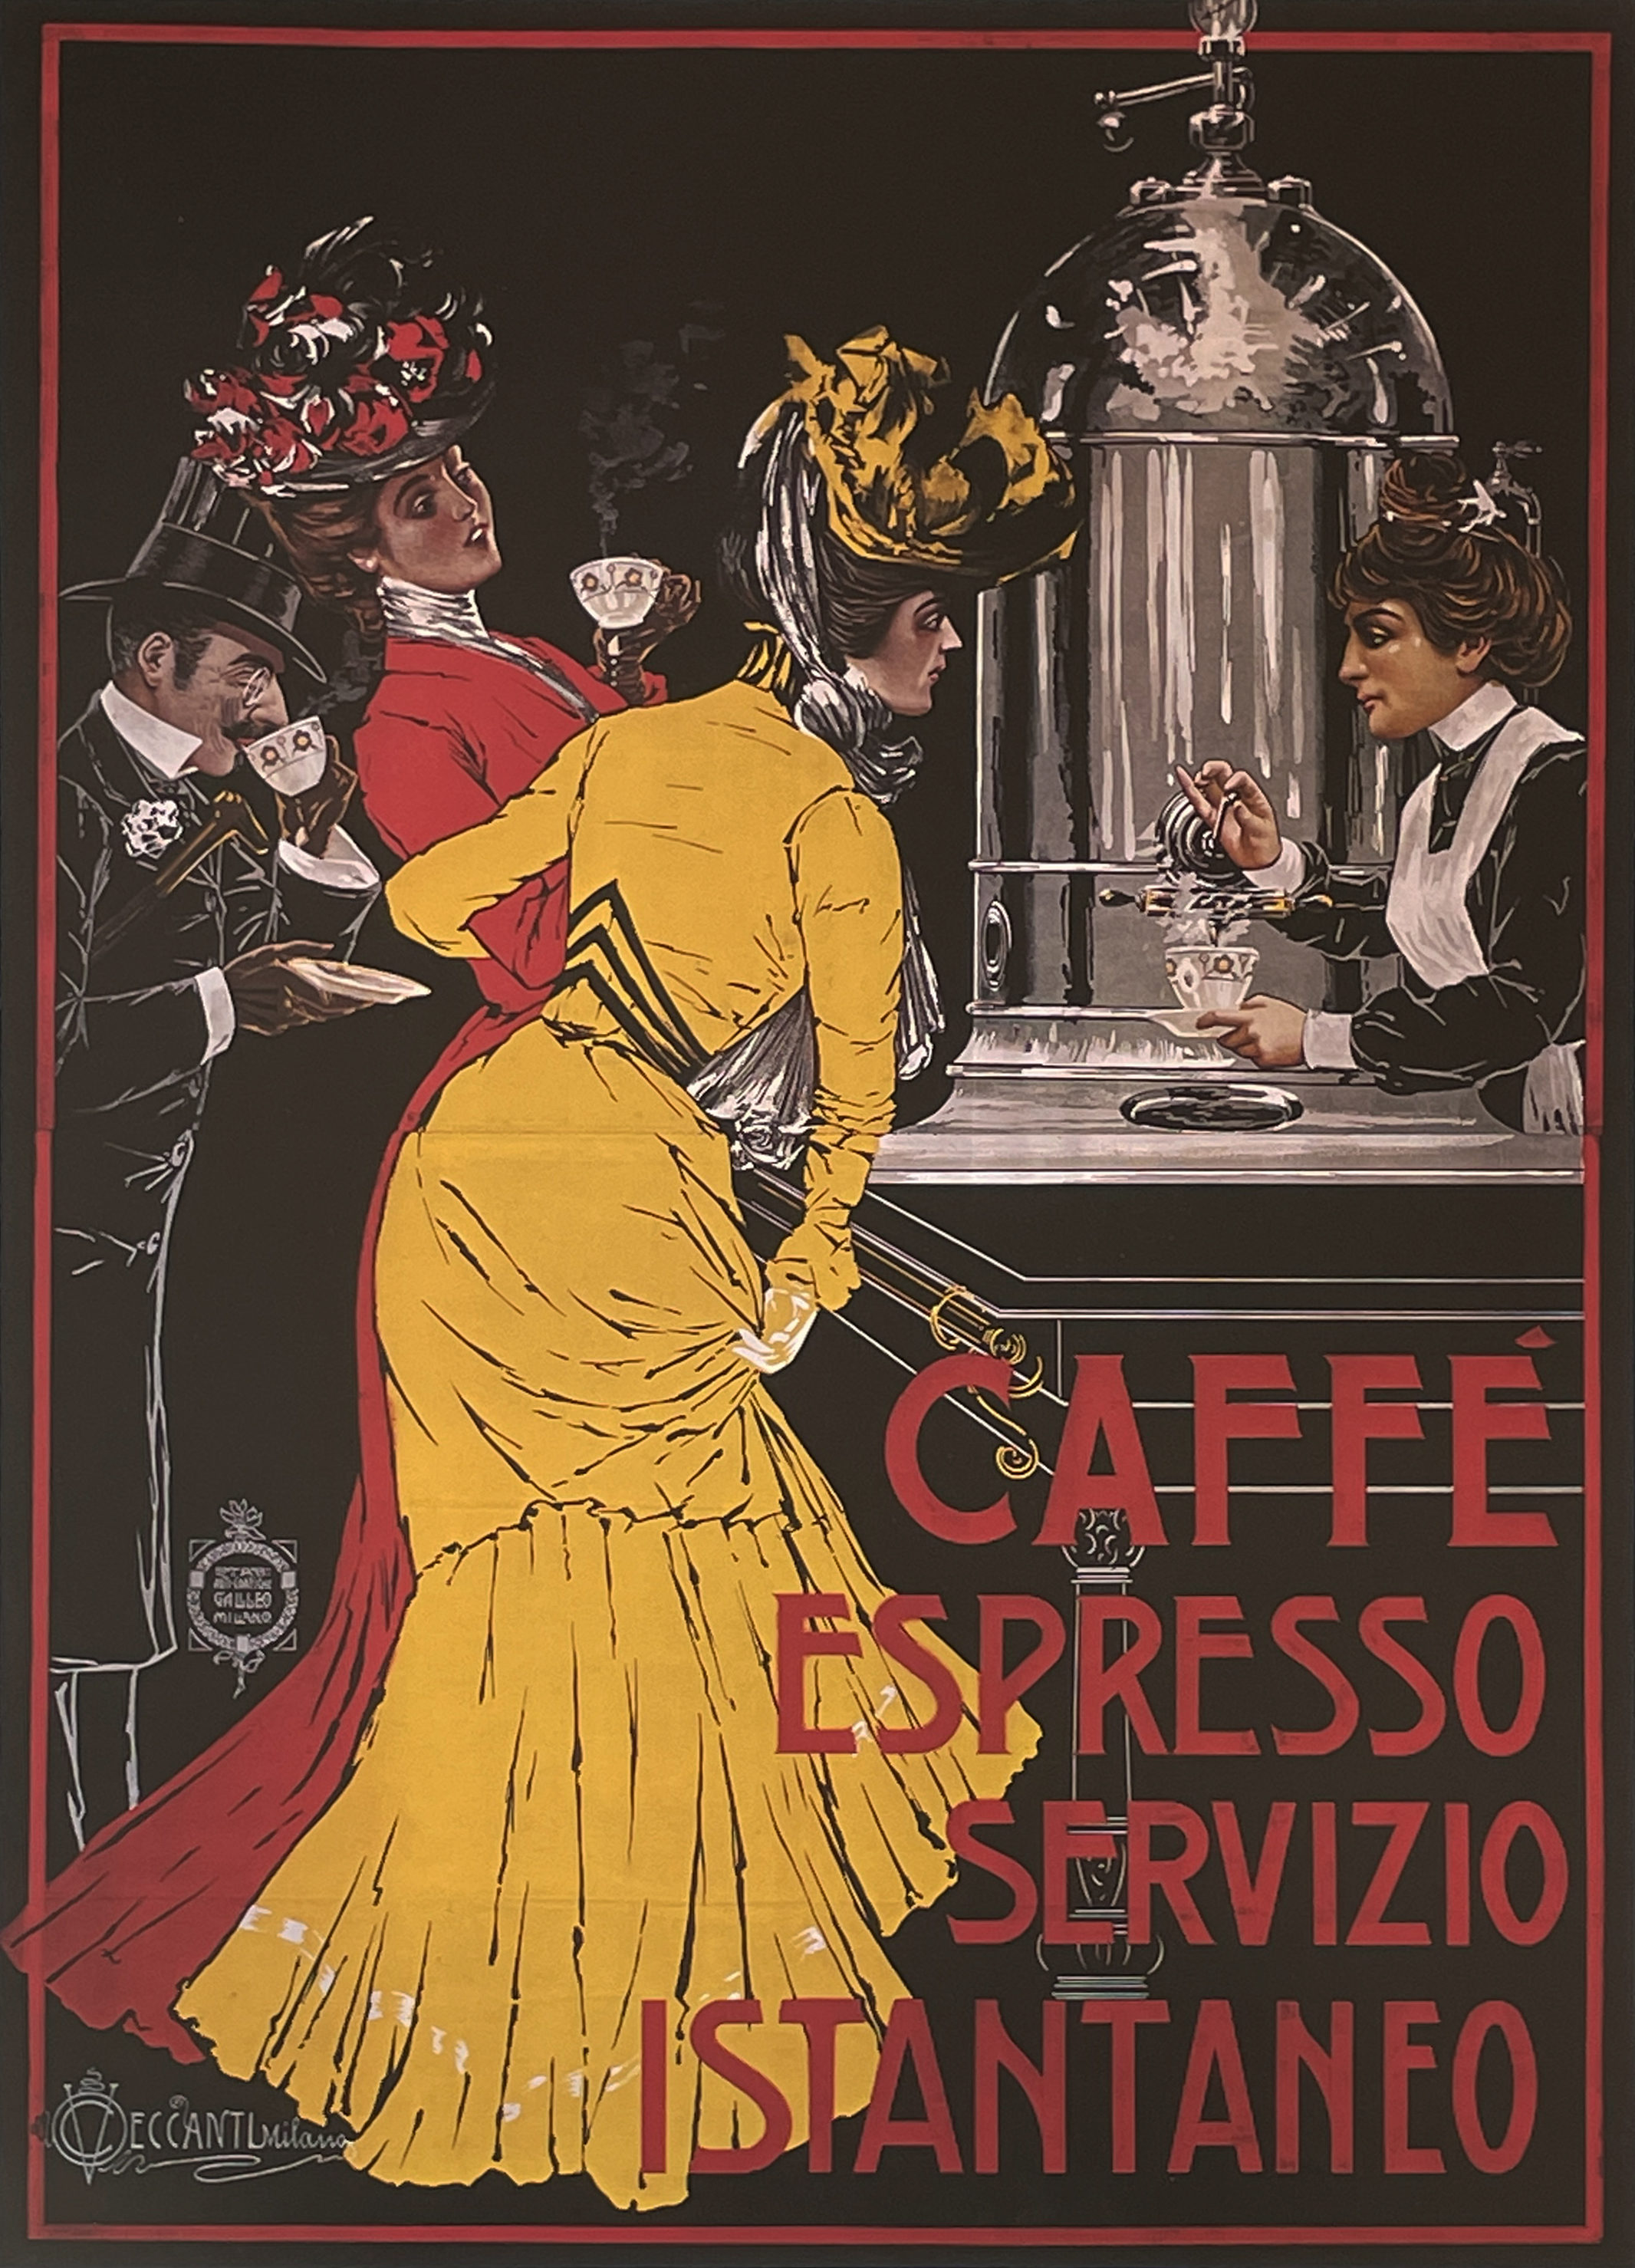 Caffe Espresso Servizio Instantaneo